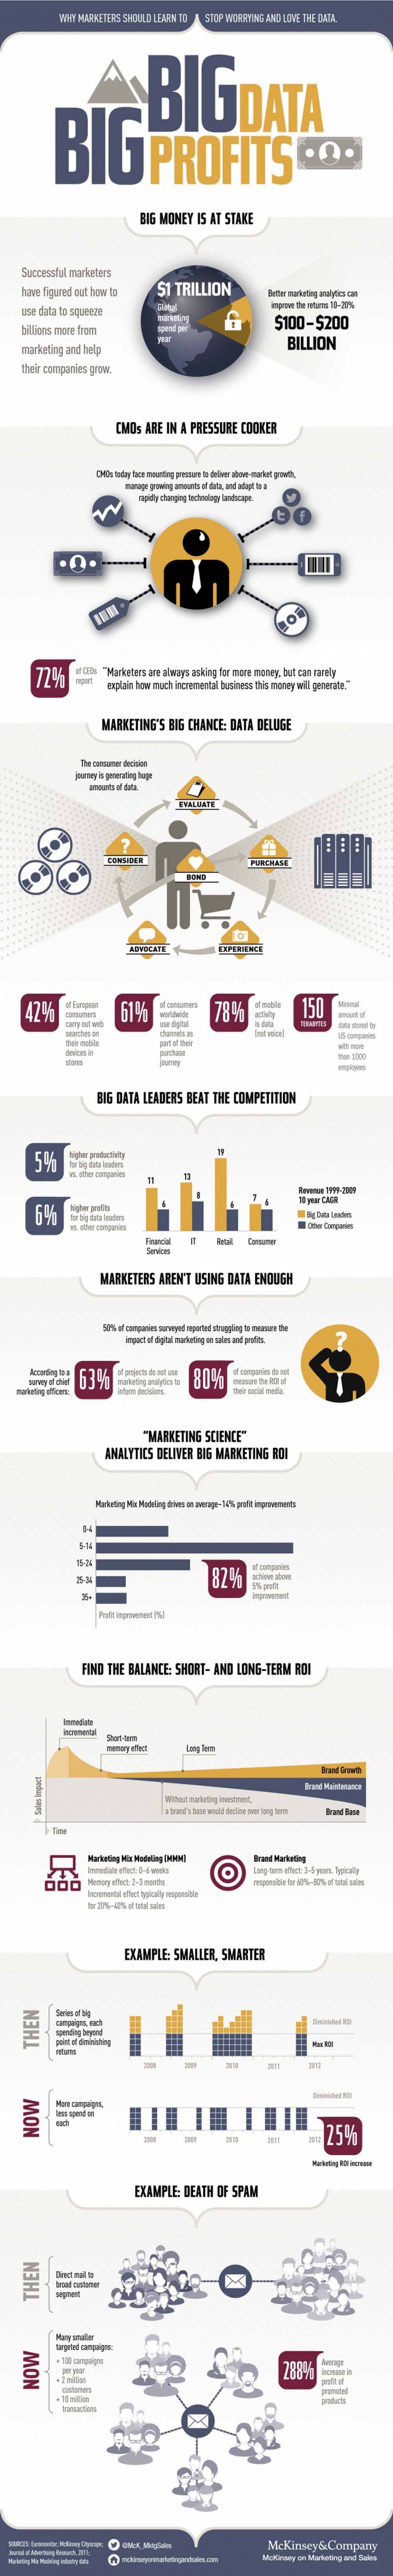  big-data-trend-2014-social-crm-agentur-social-media-analyse-start